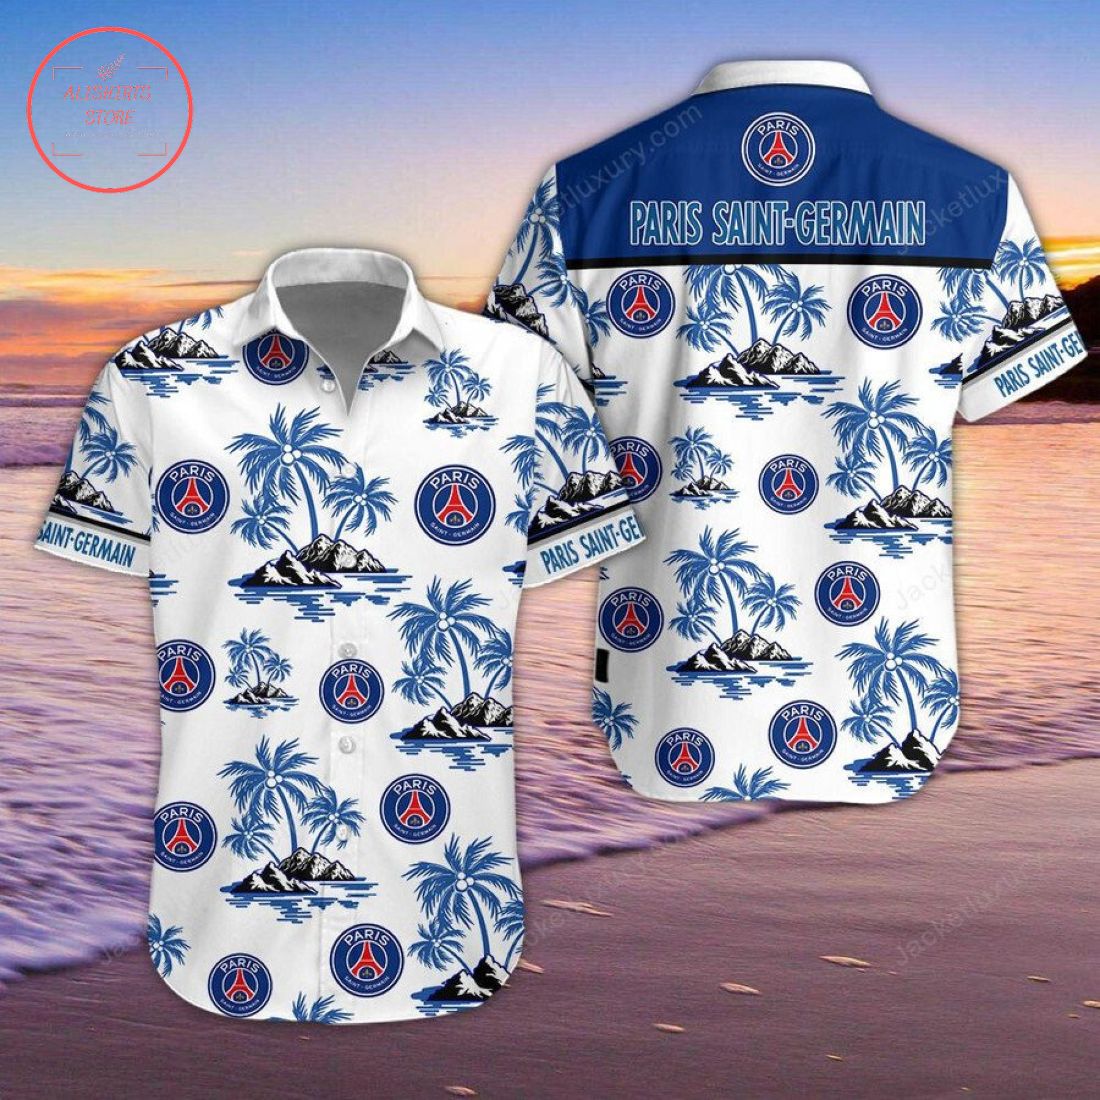 Paris Saint-Germain Hawaiian Shirt and Shorts